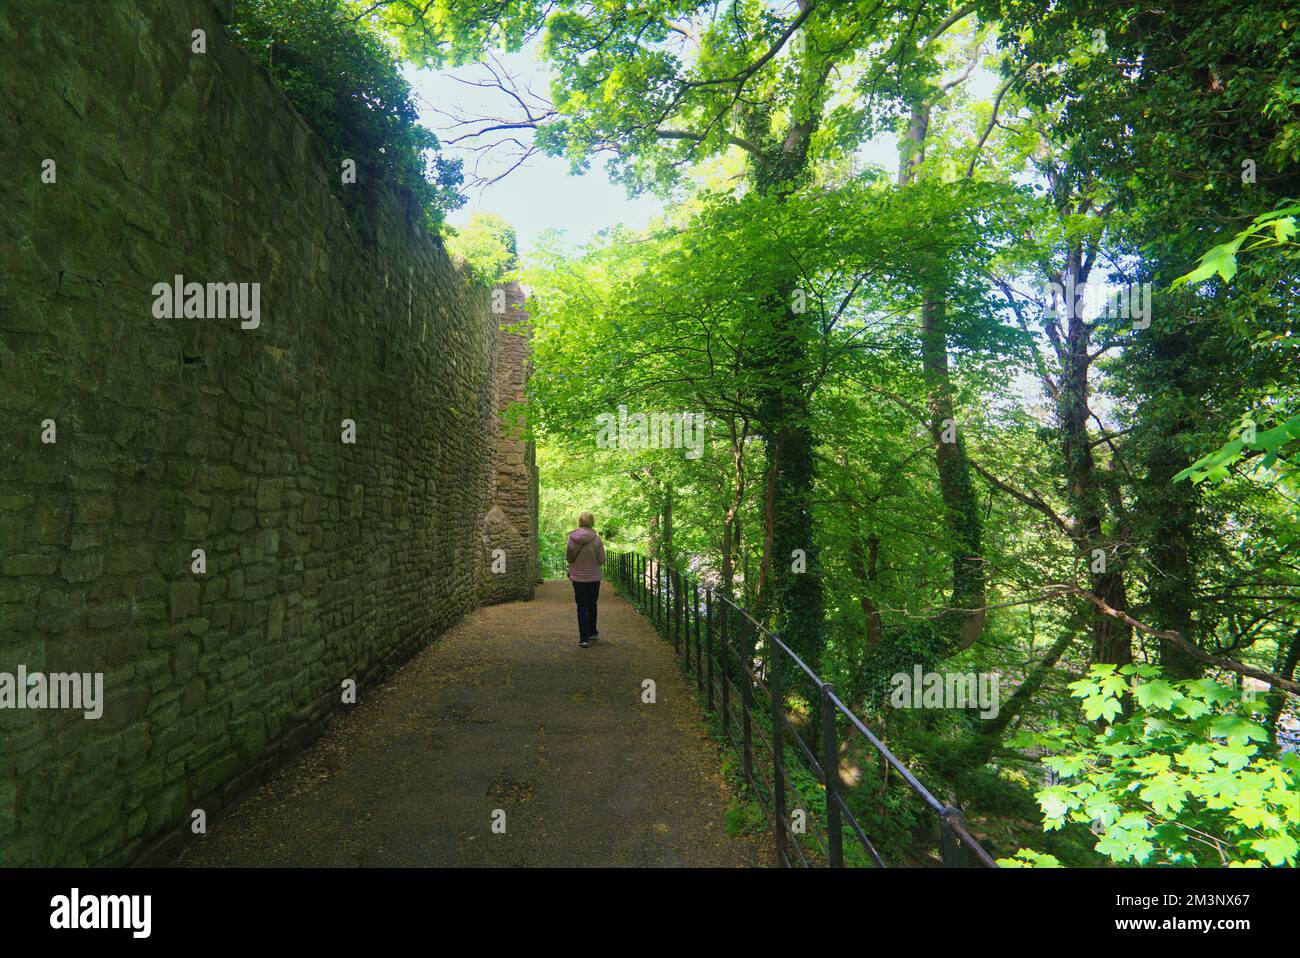 Promenade du château de Richmond. Visiteur marchant. Ce sentier sur le côté du château de Richmond. Richmond Town, Yorkshire, Angleterre, Royaume-Uni Banque D'Images